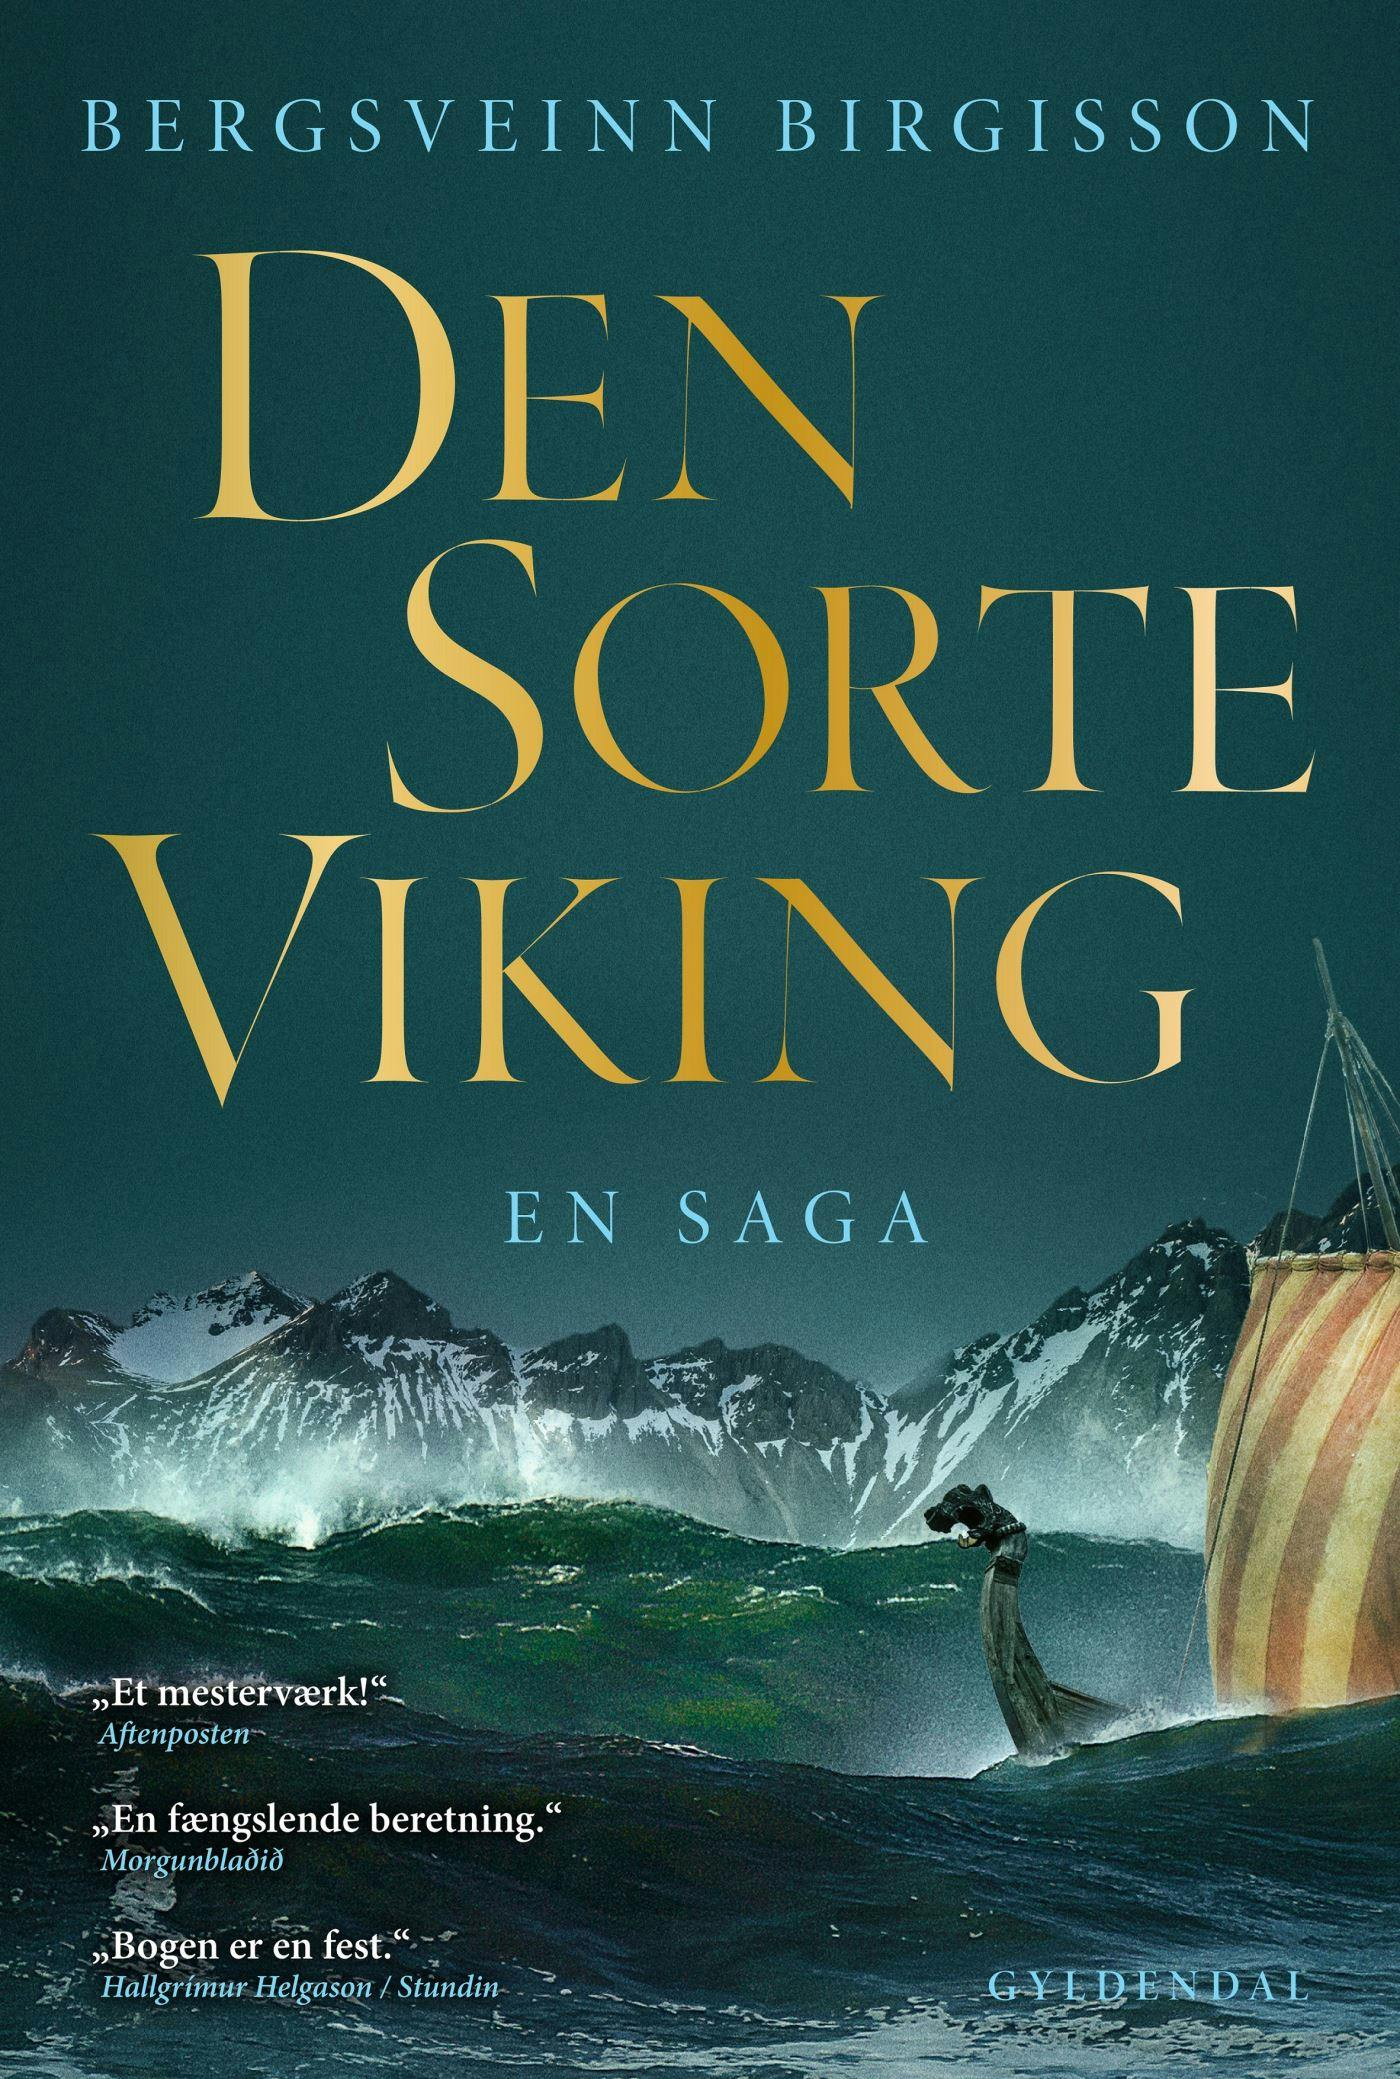 Den sorte viking: En saga - undefined